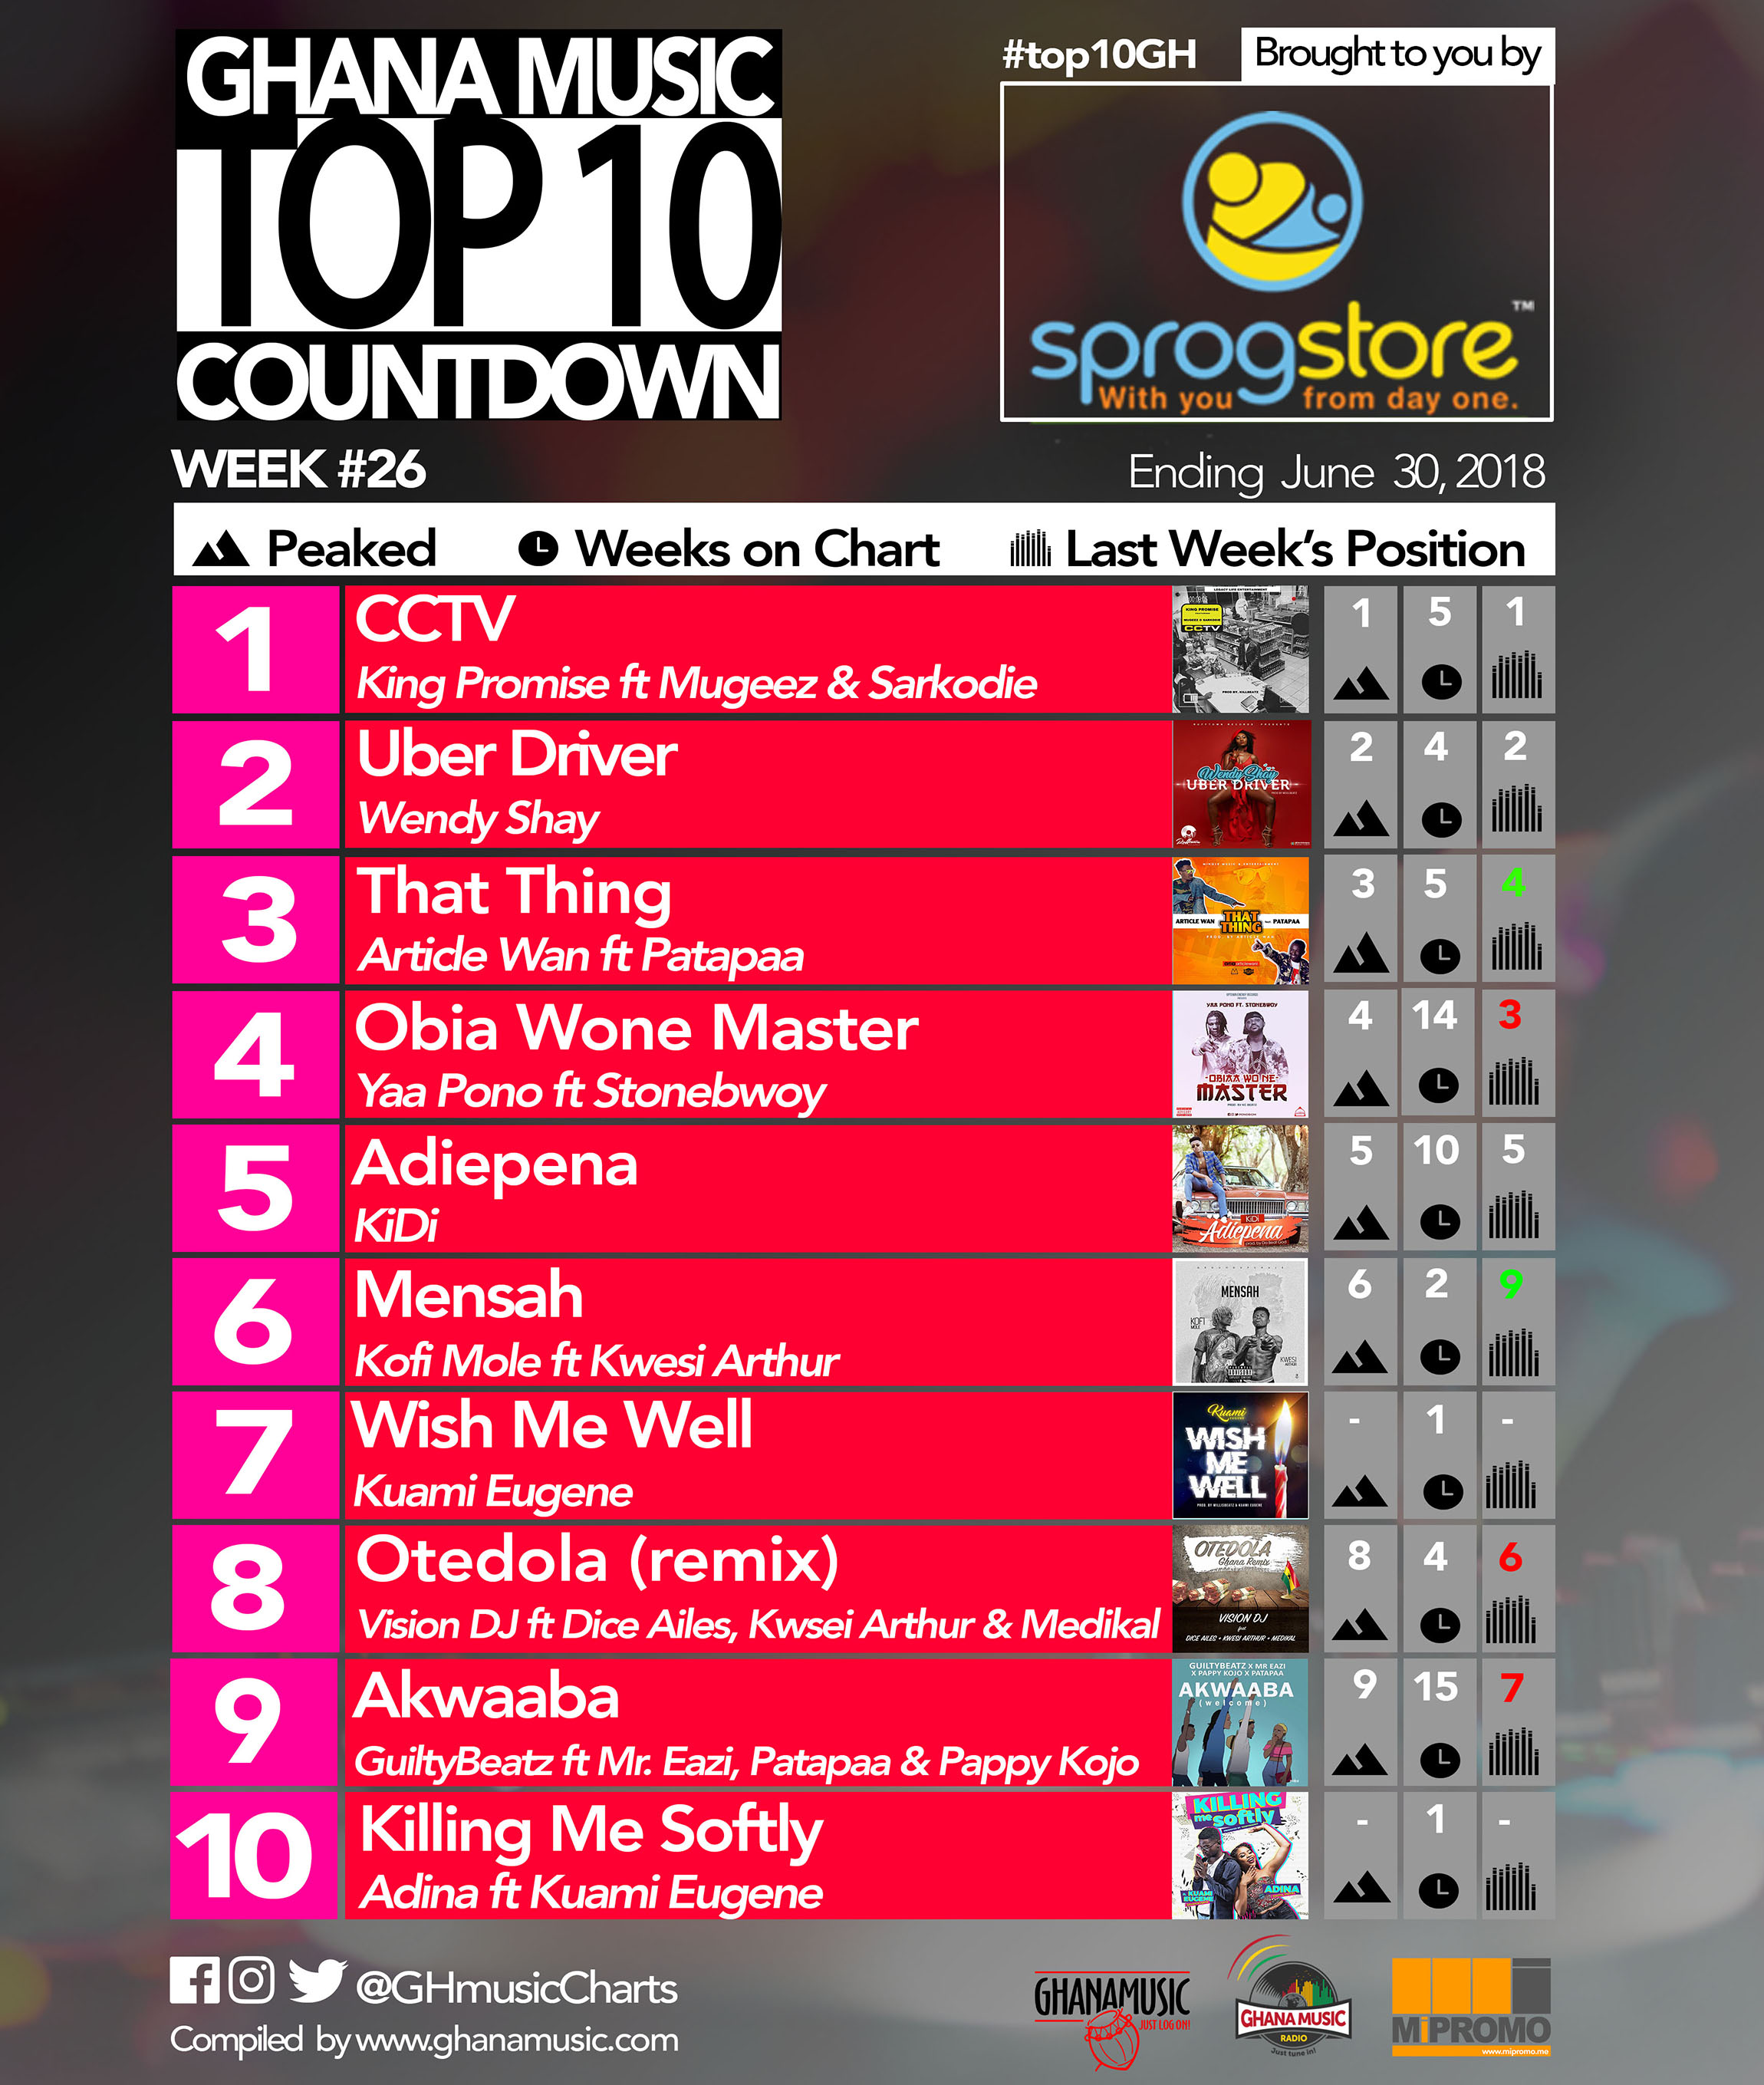 Week #26: Ghana Music Top 10 Countdown